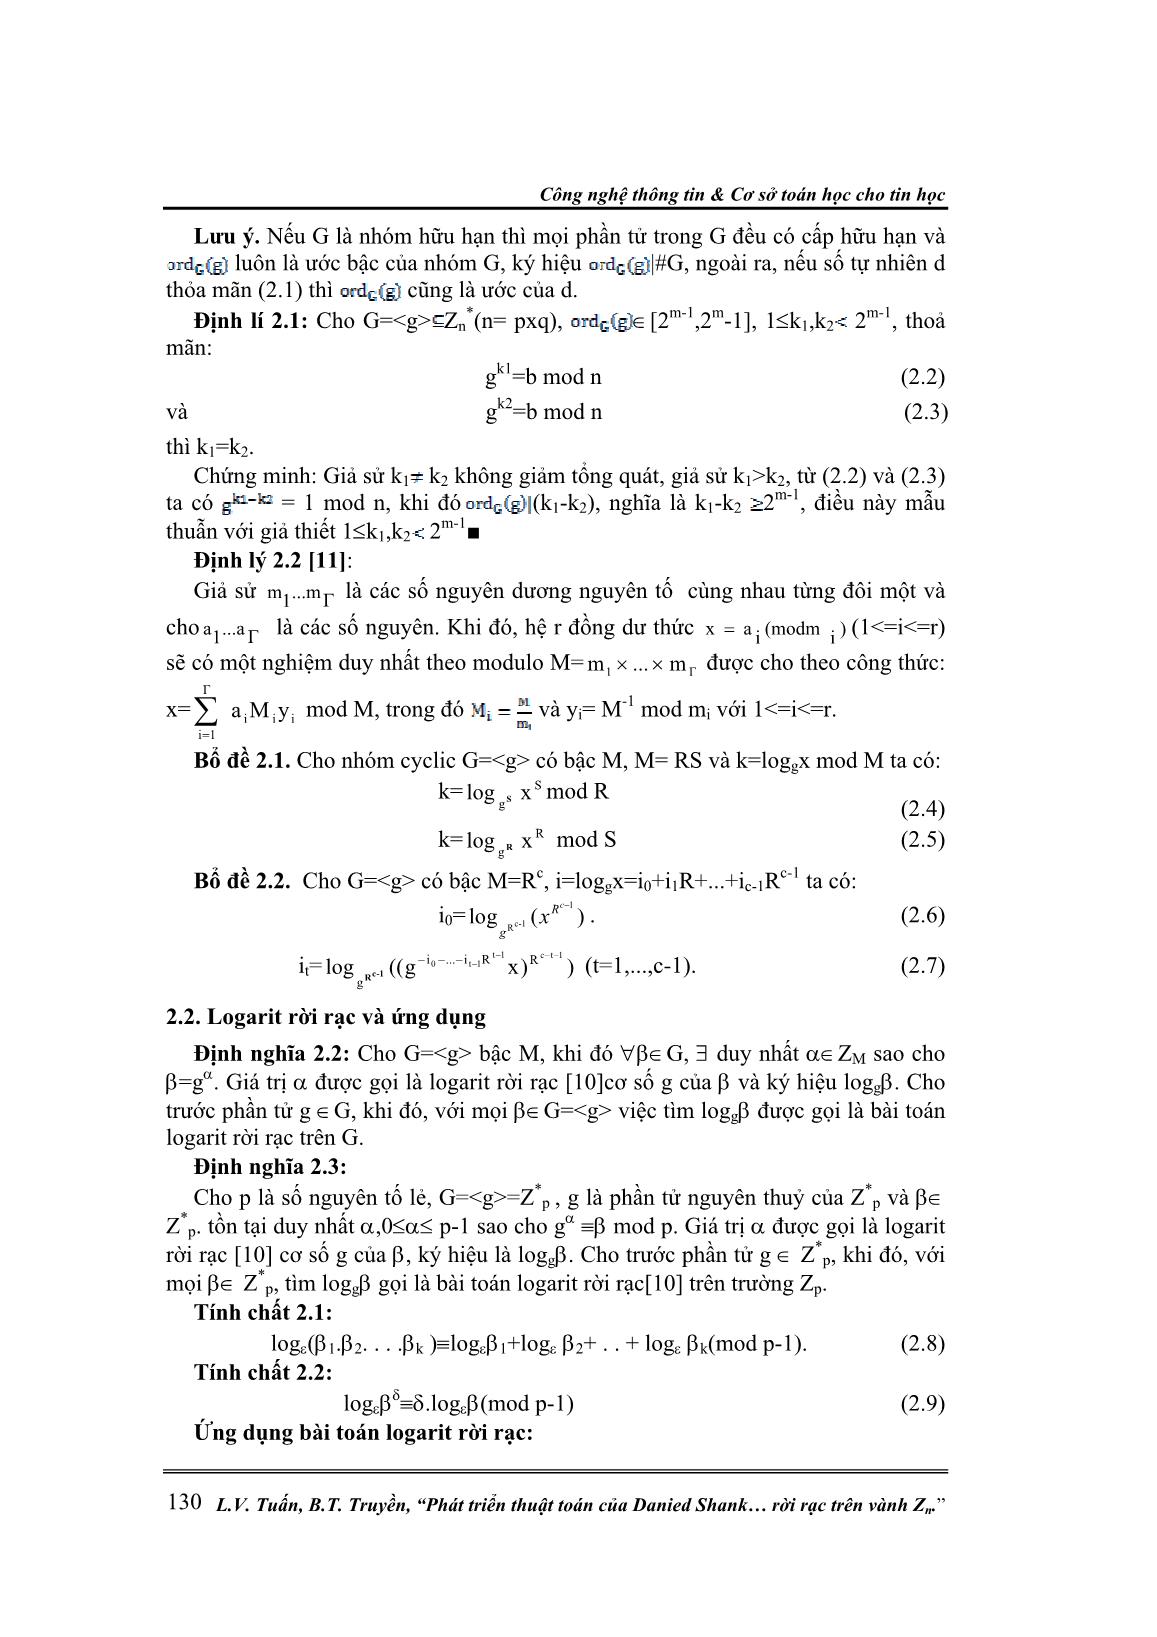 Phát triển thuật toán của Danied Shank để giải bài toán Logarit rời rạc trên vành Zn trang 2